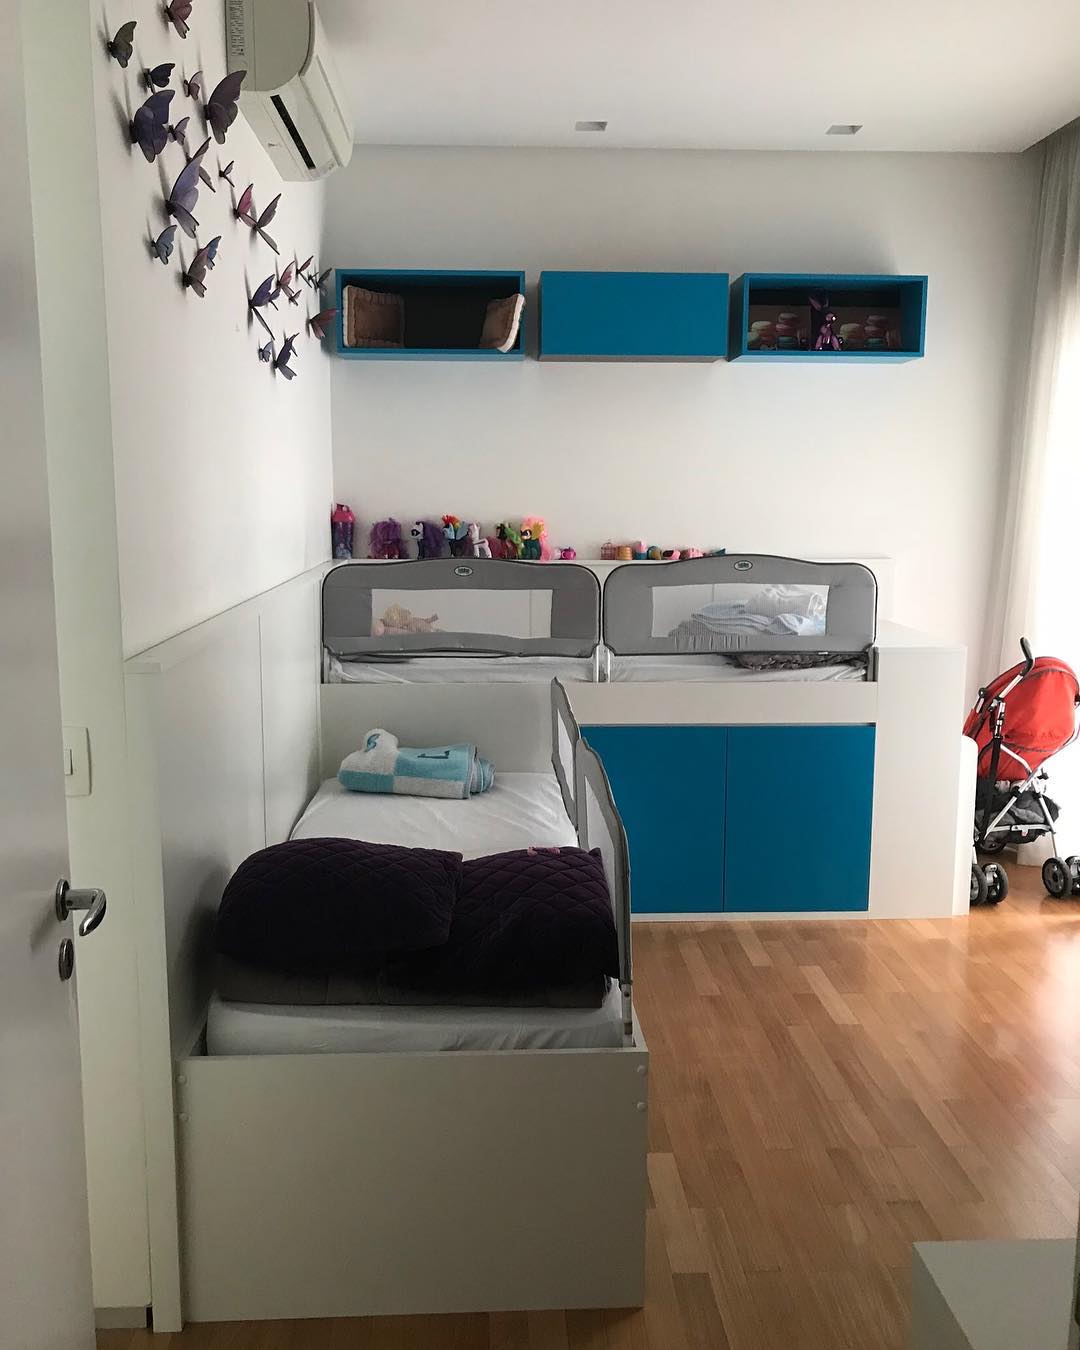 80 formas alegres de decorar una habitación infantil pequeña